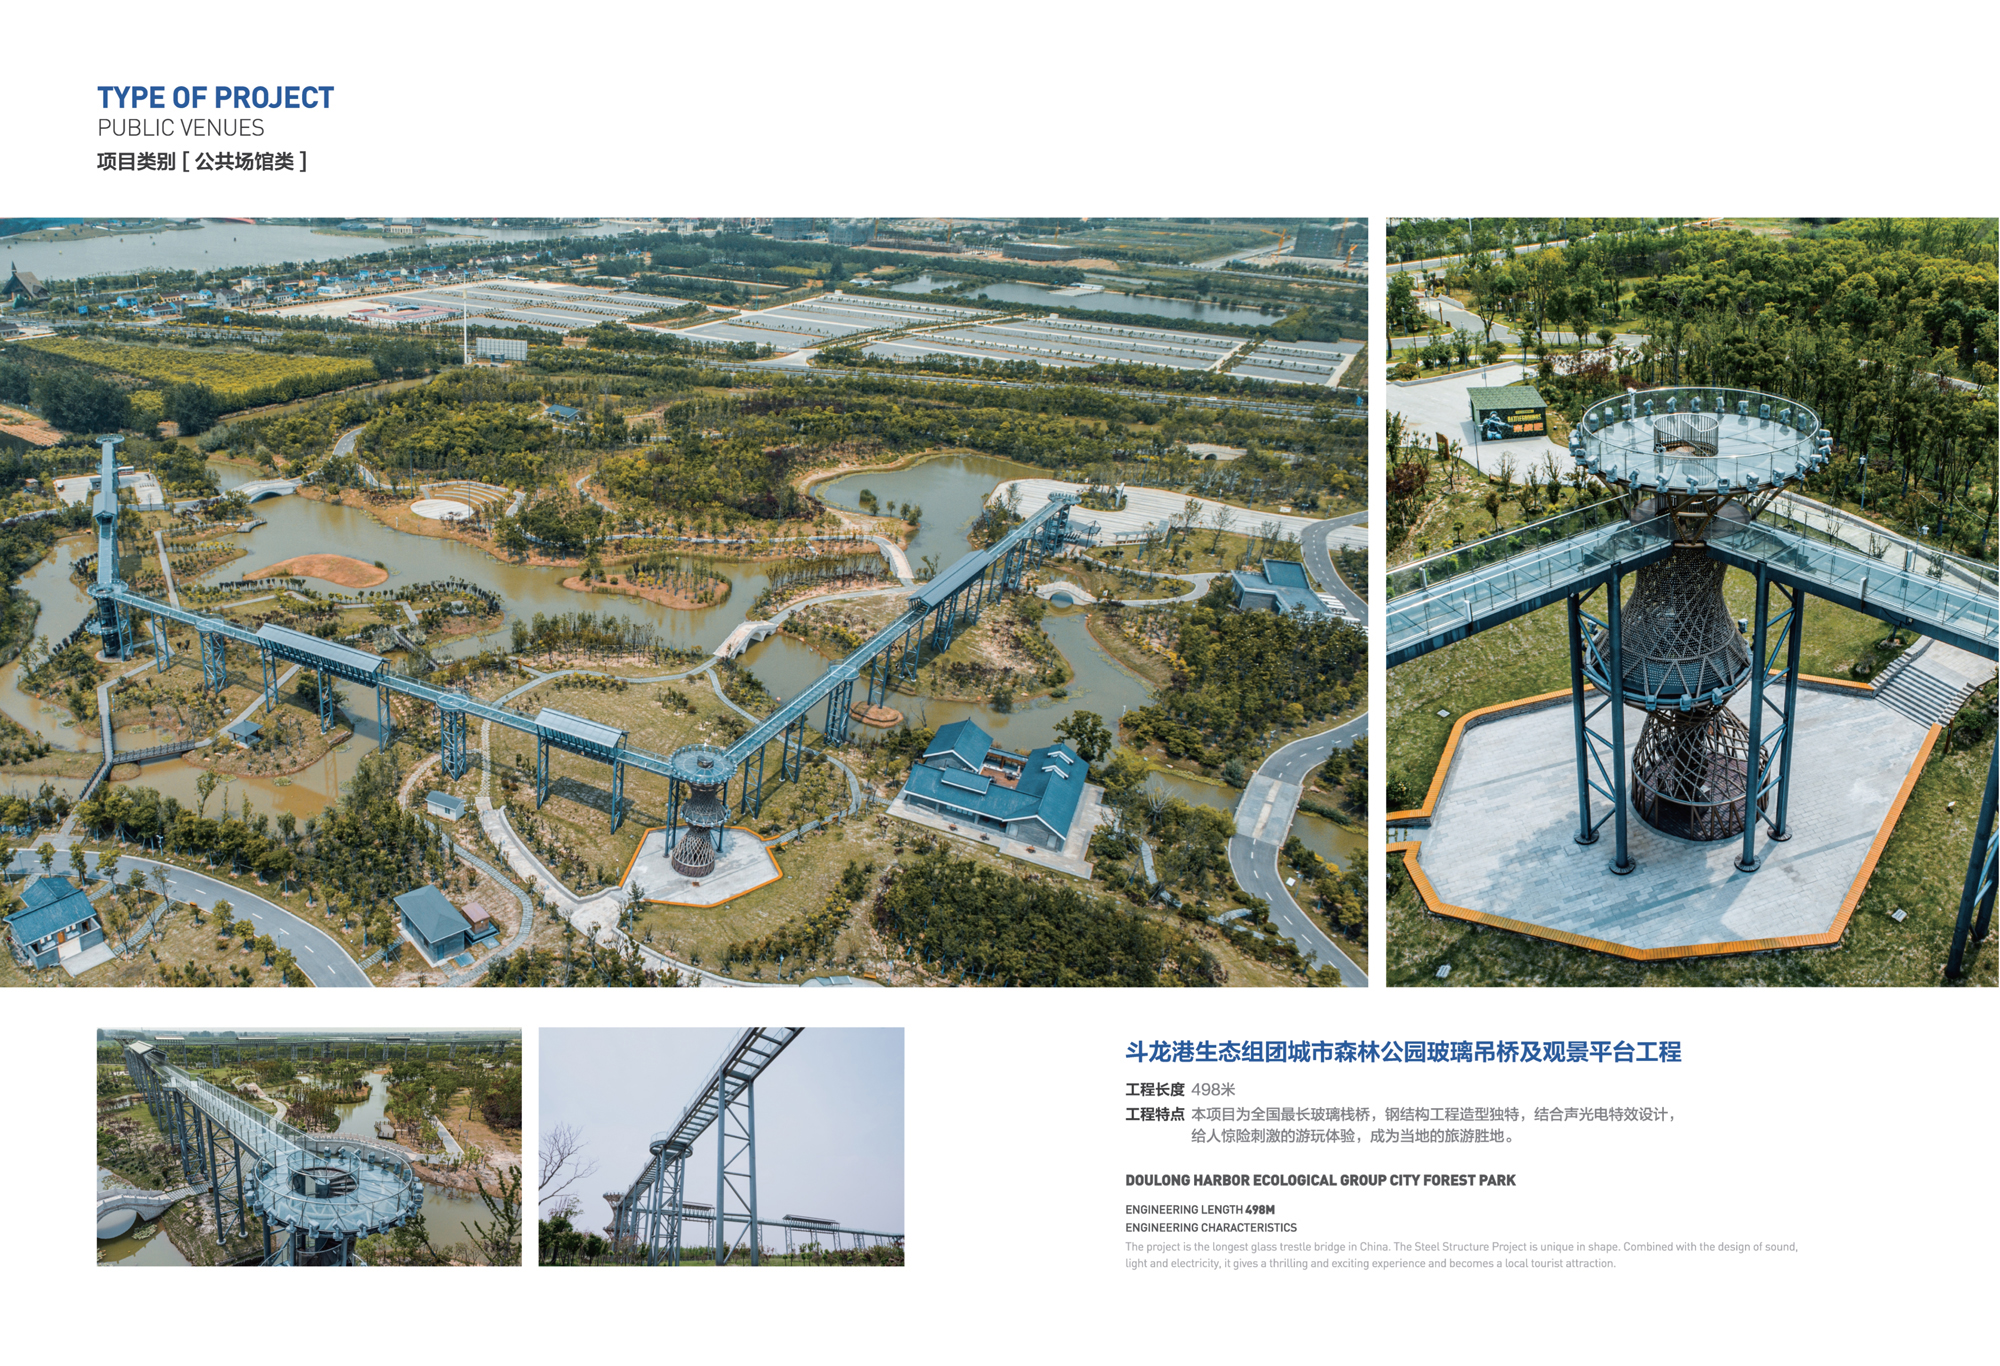 斗龙港生态组团城市森林公园玻璃吊桥及观景平台工程